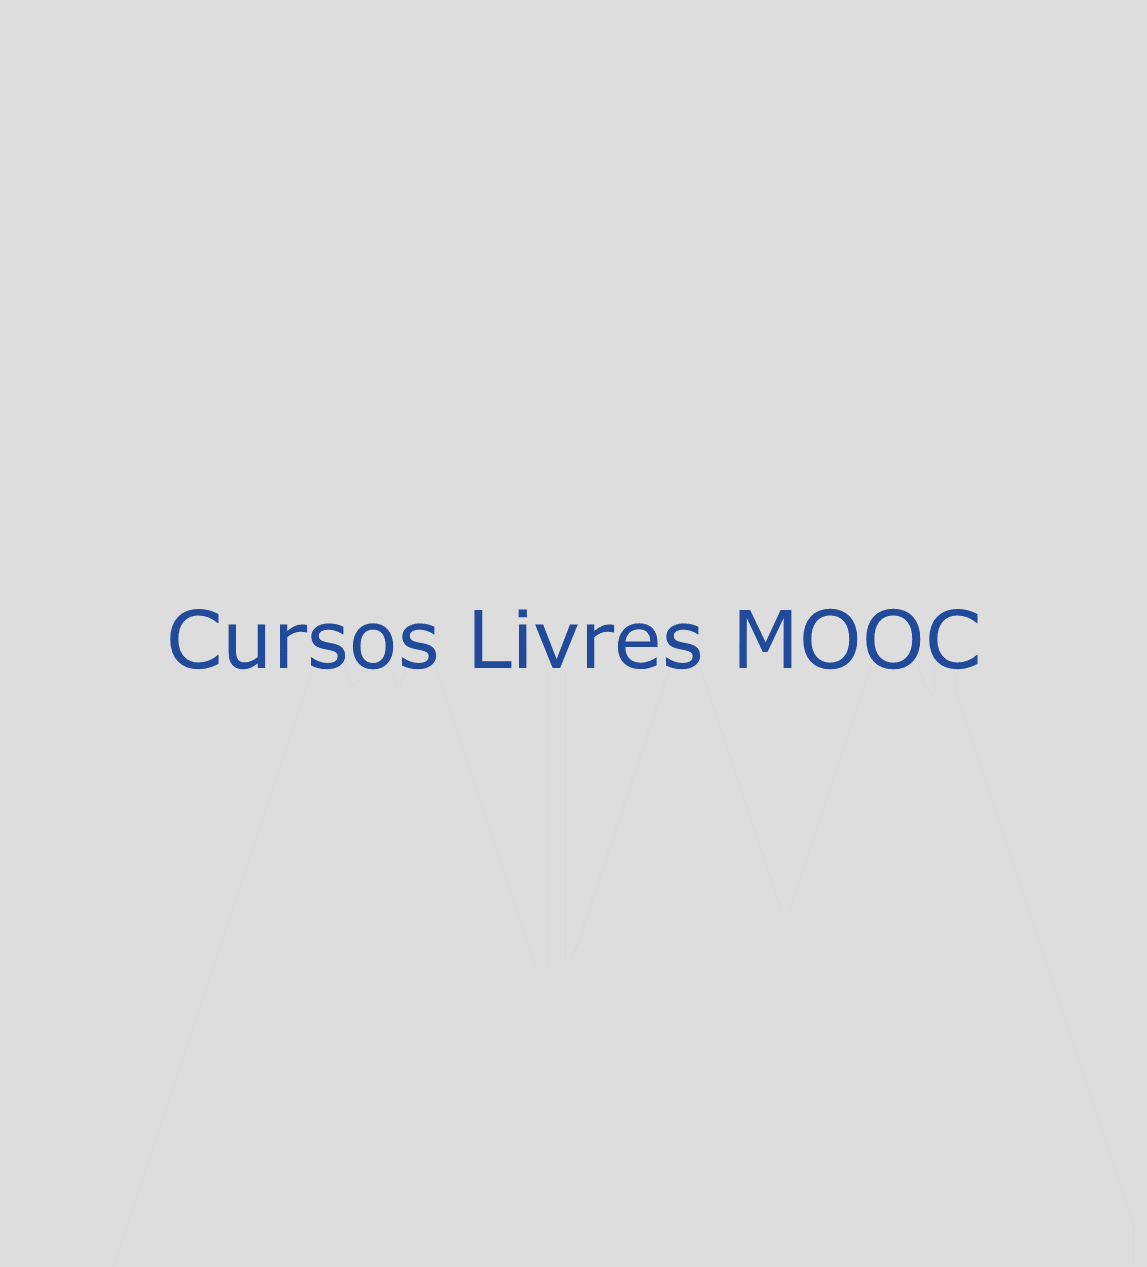 Cursos Livres MOOC